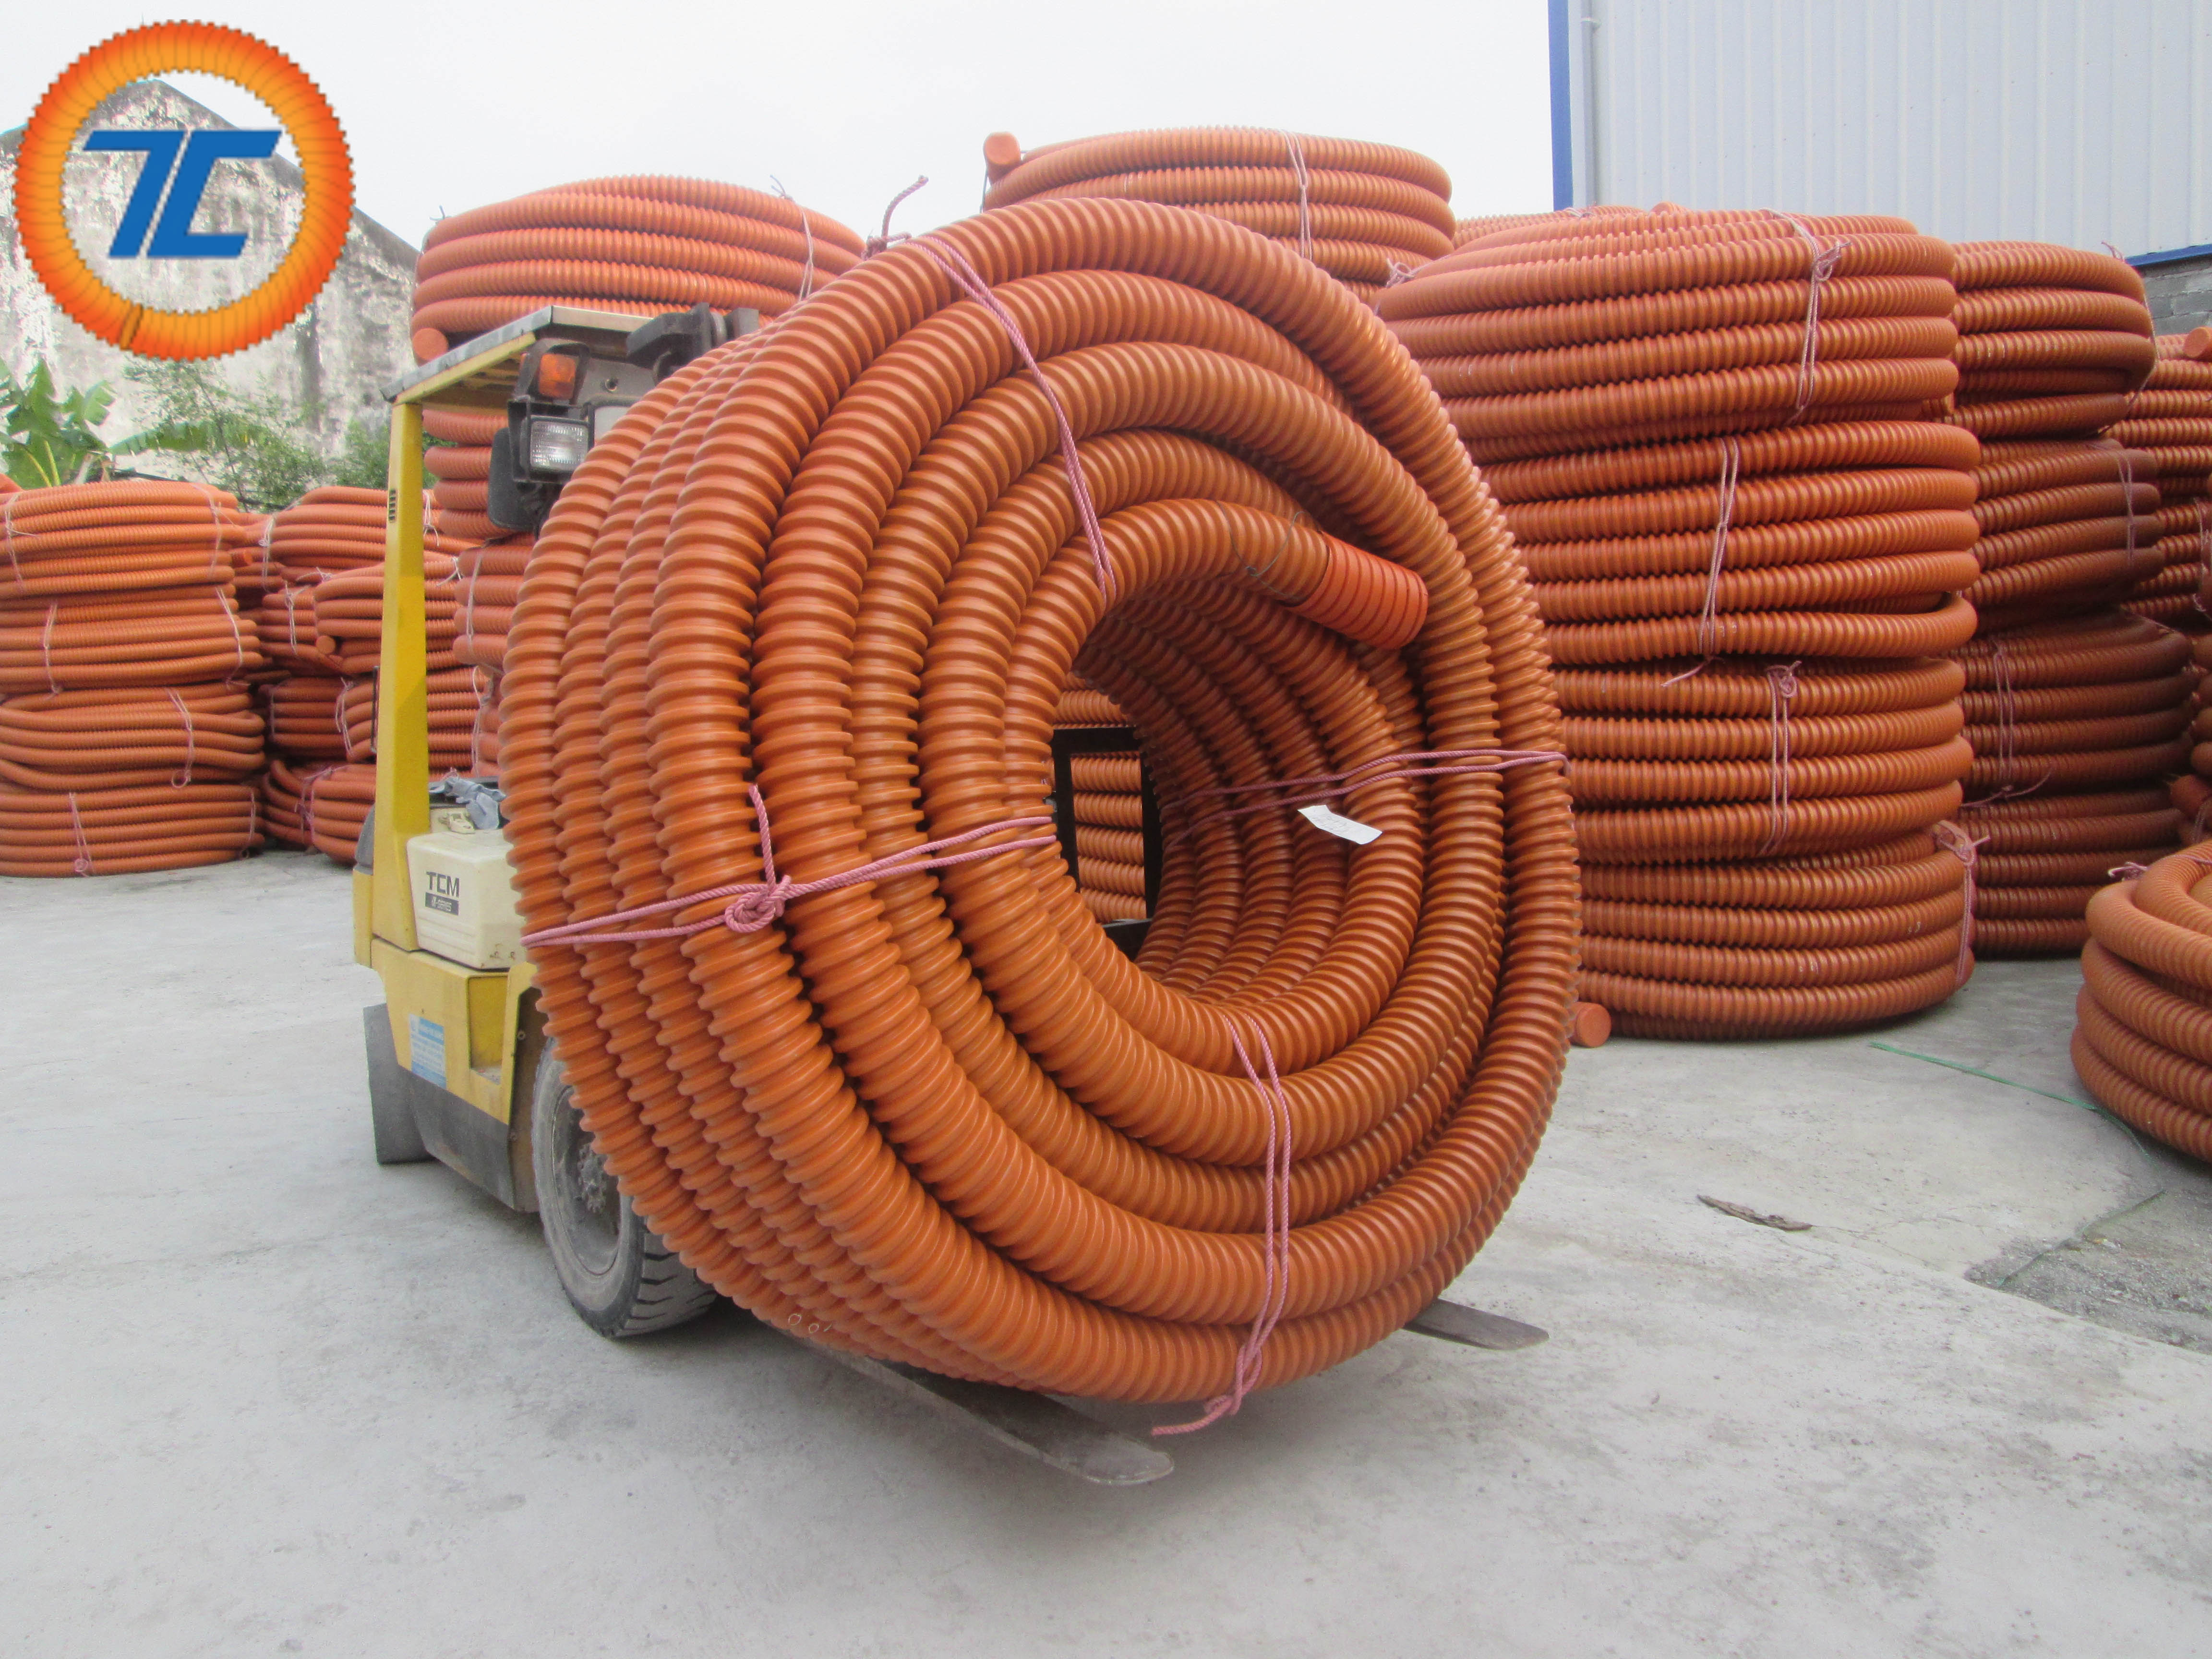 Đơn vị cung cấp ống nhựa xoắn HDPE tại quận Hoàn Kiếm uy tín, chất lượng hàng đầu